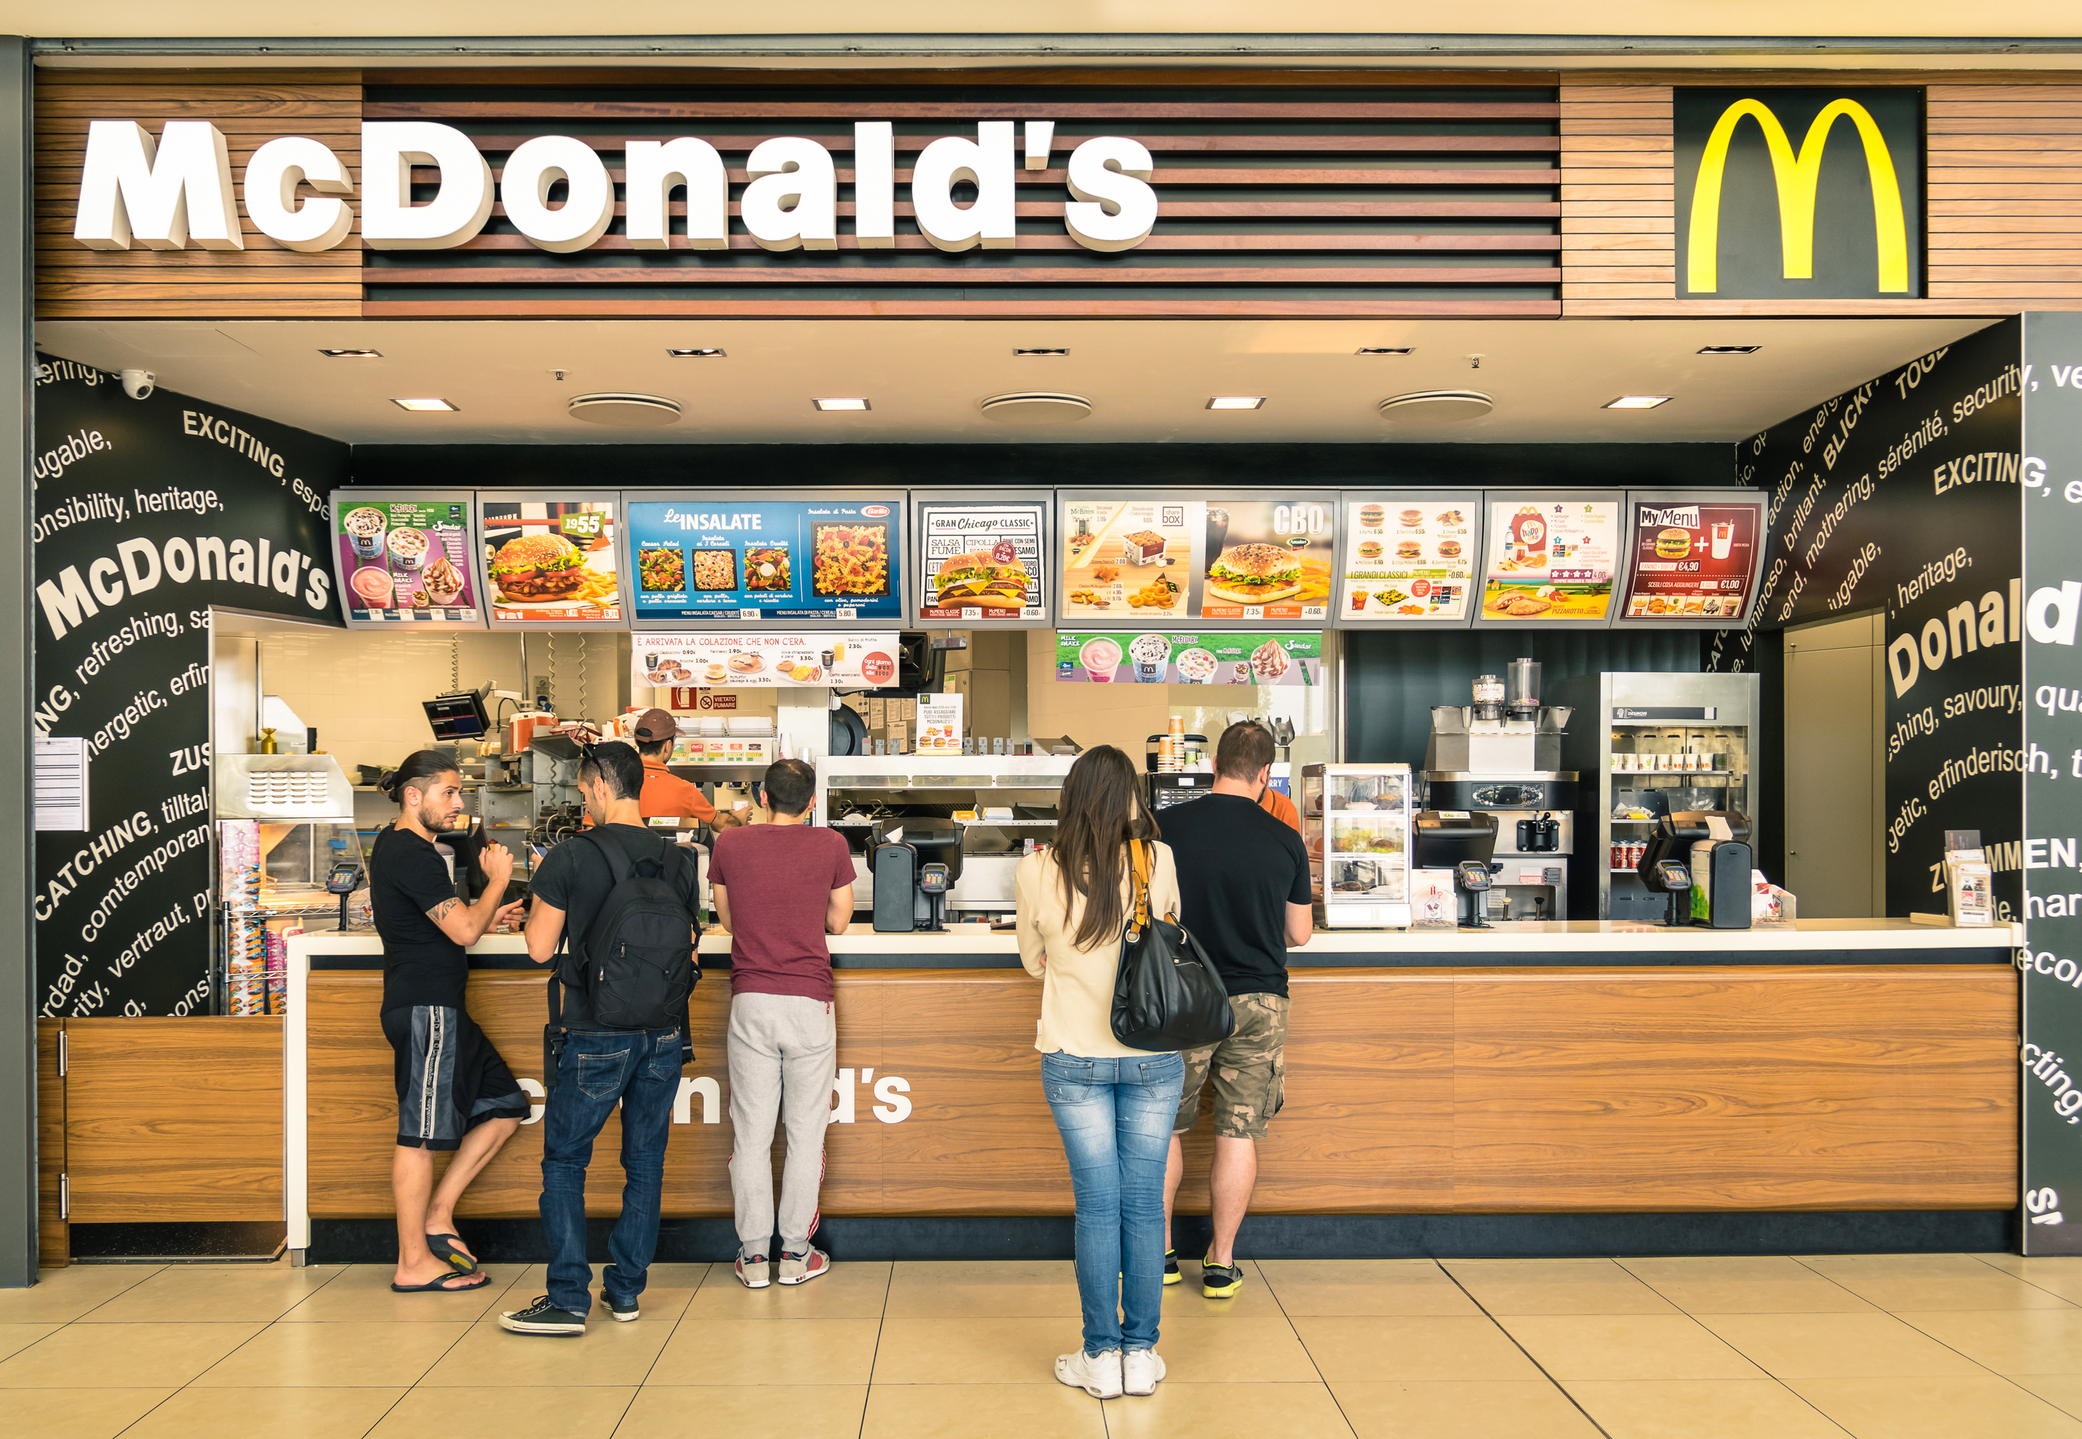 Τα νέα McDonald’s στη Ρωσία, κύμα καταγγελιών.  “Το τσίζμπεργκερ έχει περίεργη γεύση” – Evenimentul Zilei